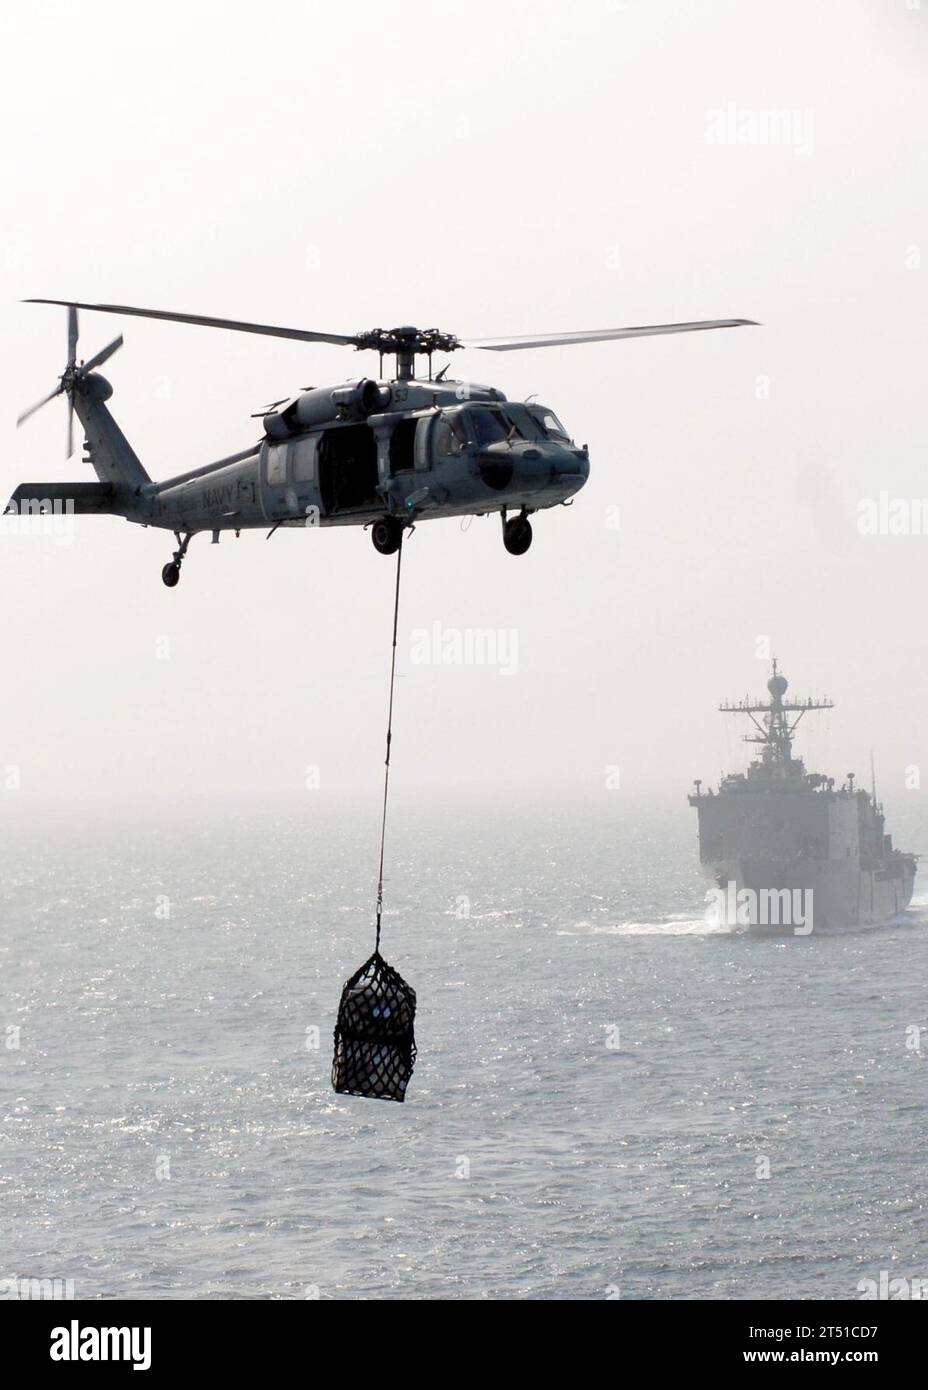 0911115148B-032 GOLFO DELL'OMAN (11 novembre 2009) un elicottero MH-60S Sea Hawk assegnato all'Helicopter Sea Combat Squadron (HSC) 23 consegna il carico a bordo del ponte di volo della nave di supporto rapido del Military Sealift Command USNS Bridge (T-AOE 10) durante un rifornimento verticale con il Bonhomme Richard Amphibious Ready Group (ARG). Il Bonhomme Richard ARG sta sostenendo le operazioni di sicurezza marittima nell'area di responsabilità della 5th Fleet. Marina Foto Stock